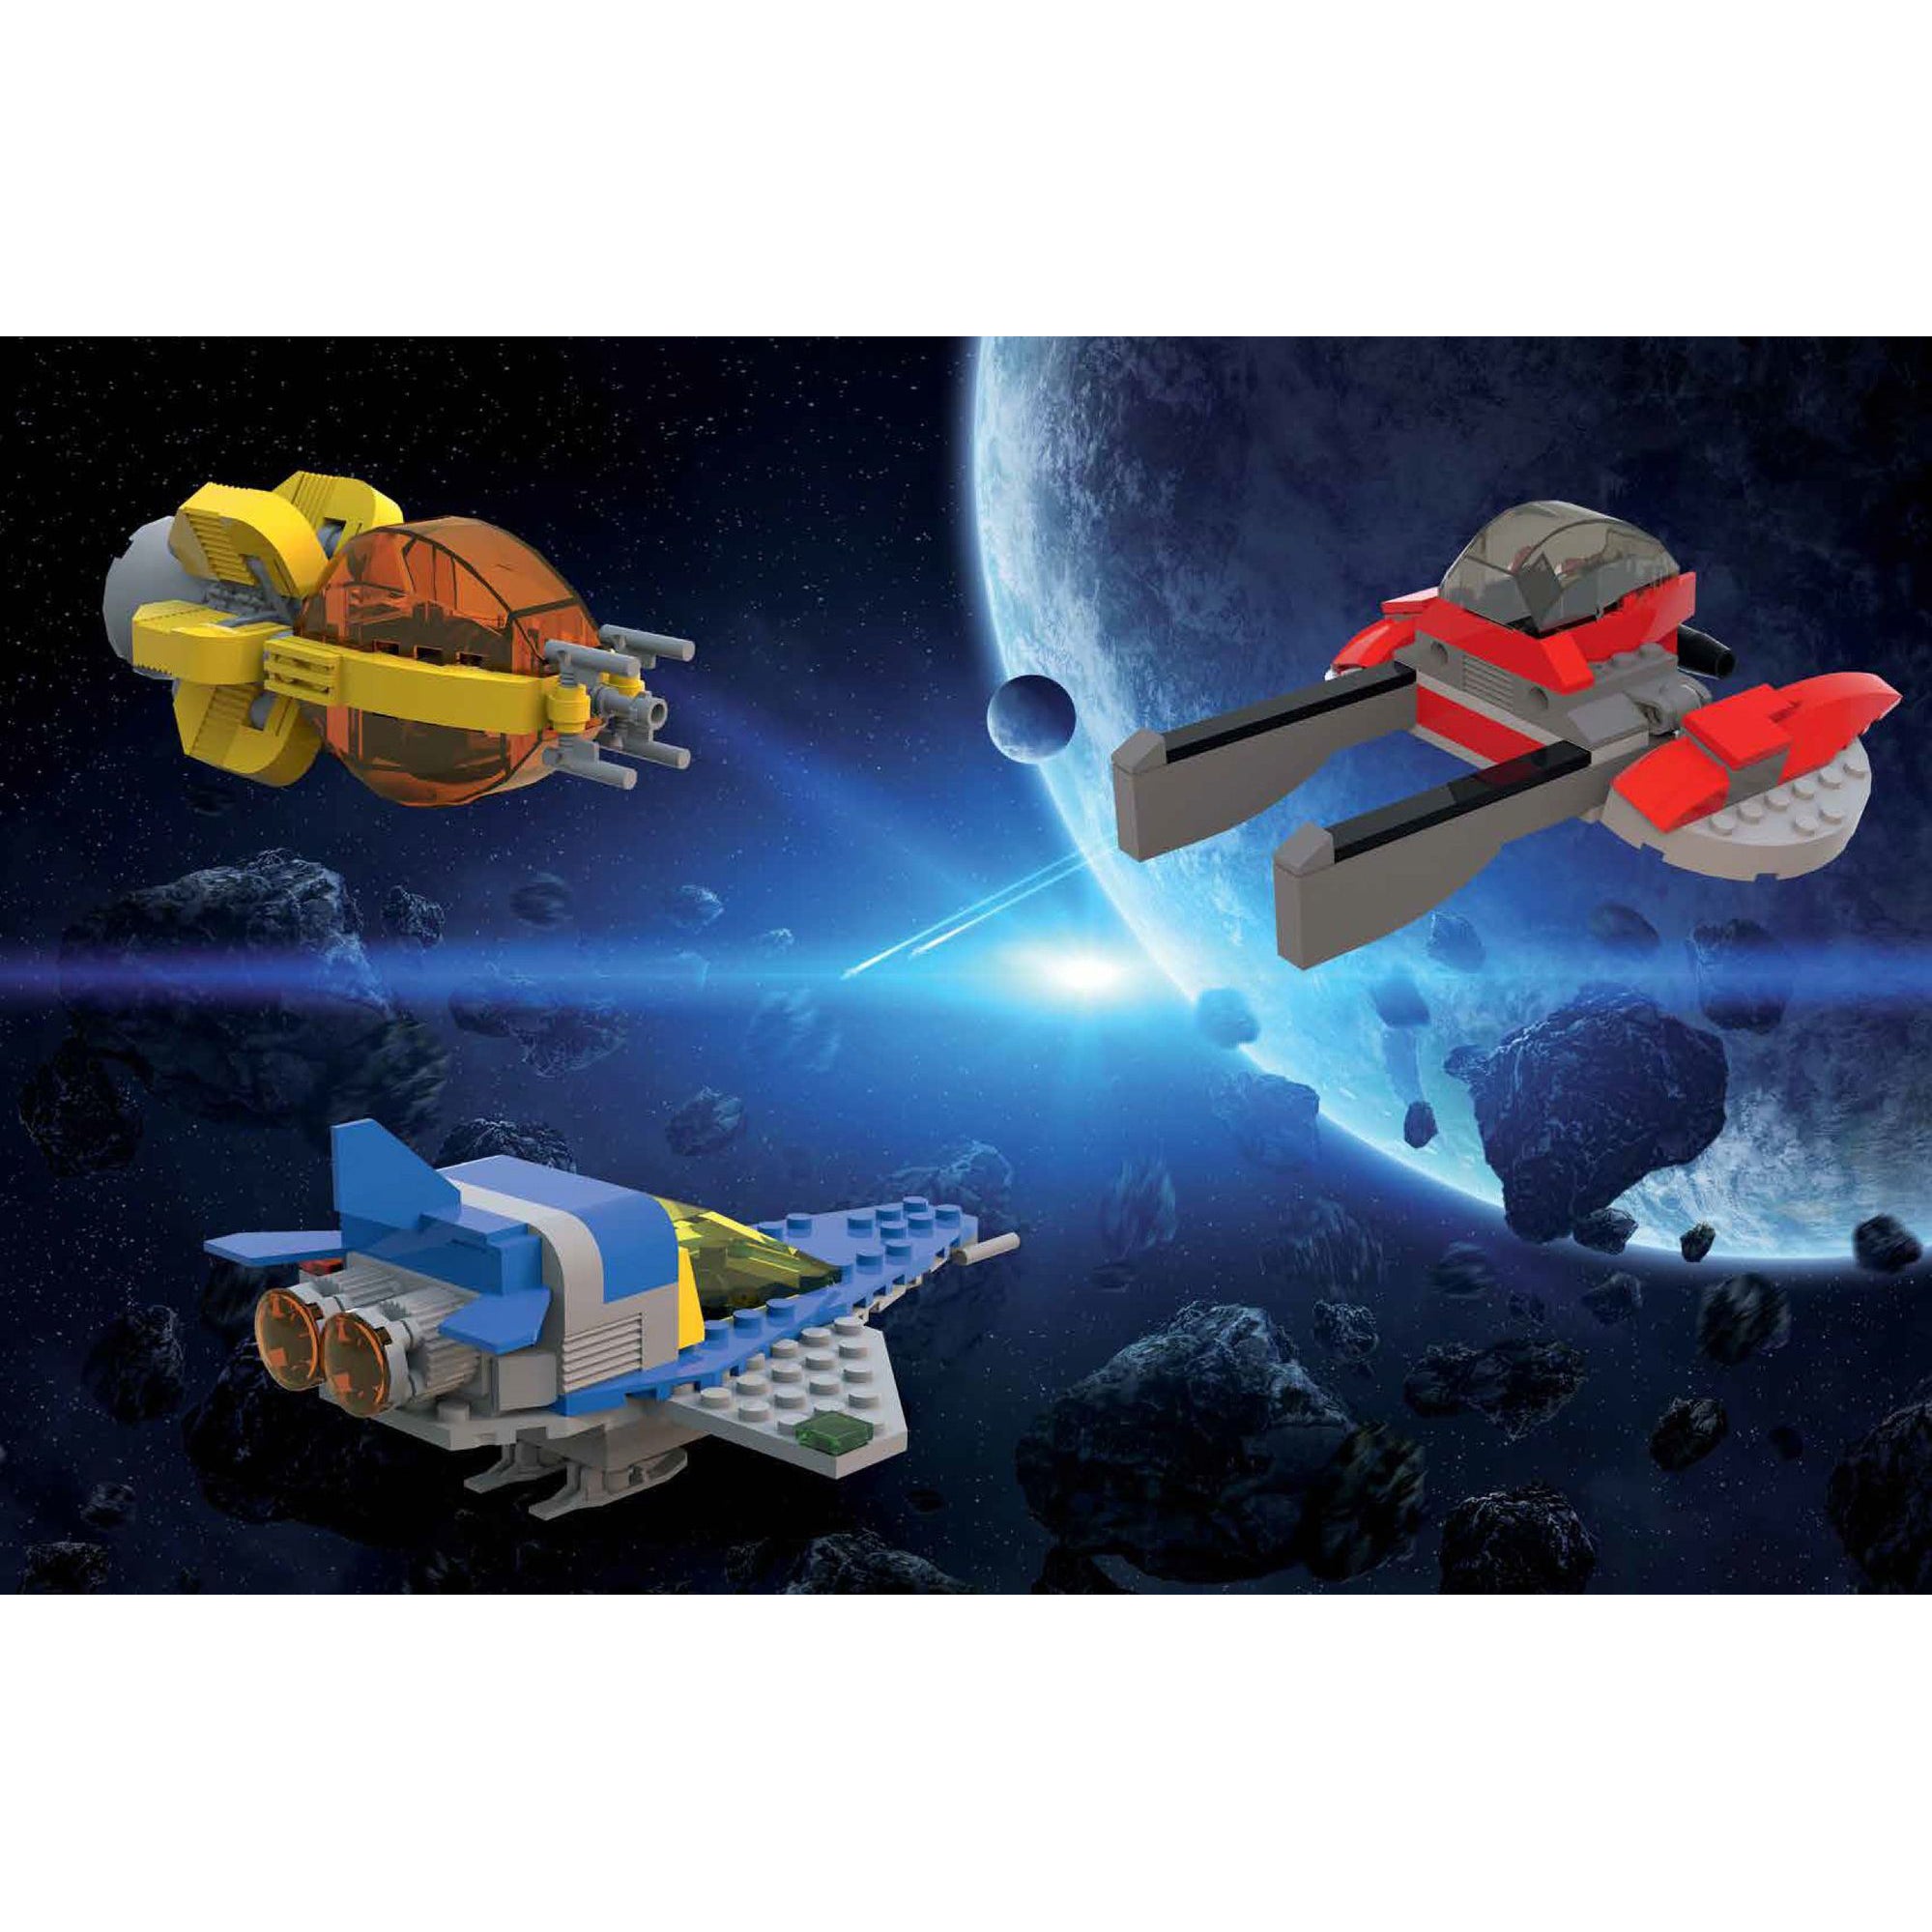 Avventure spaziali - costruisci fantastici robot e astronavi con i mattoncini LEGO®